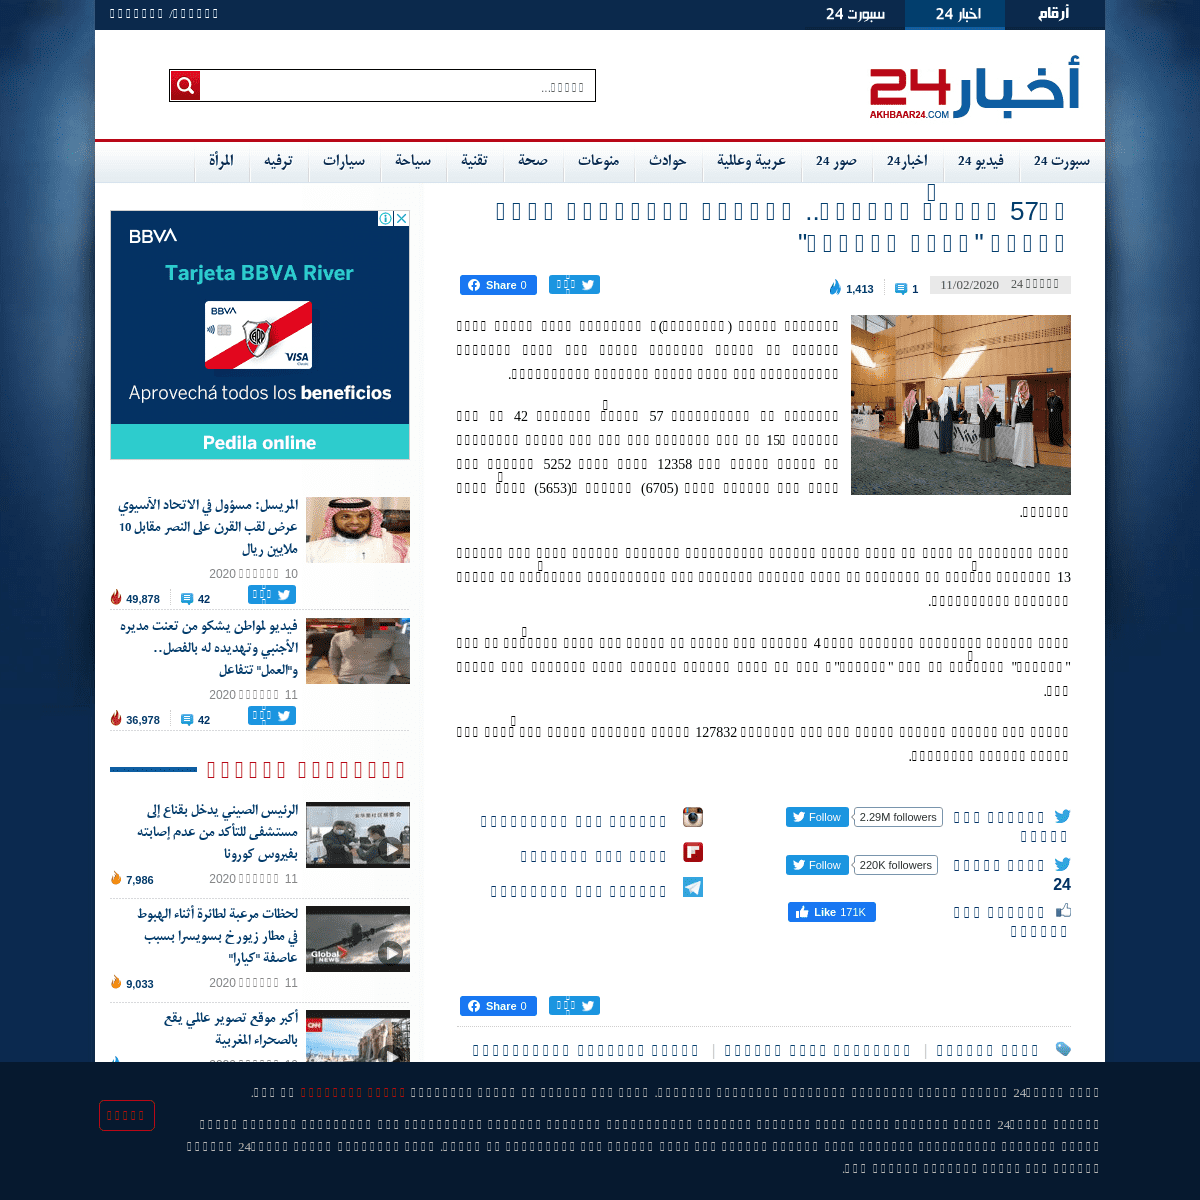 A complete backup of akhbaar24.argaam.com/article/detail/478934